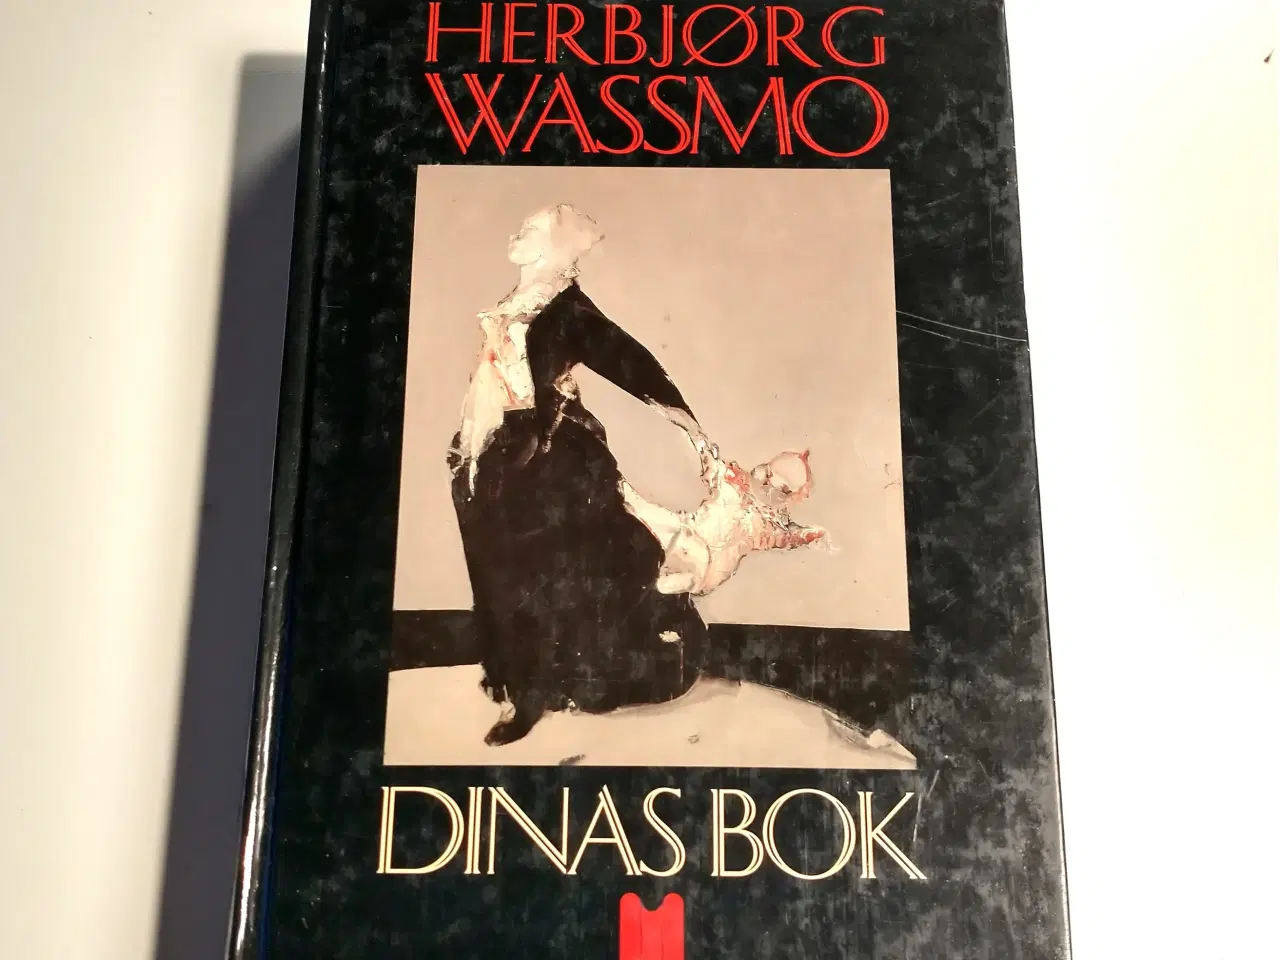 Billede 1 - Dinas bok (Norsk). Af Herbjorg Wassmo